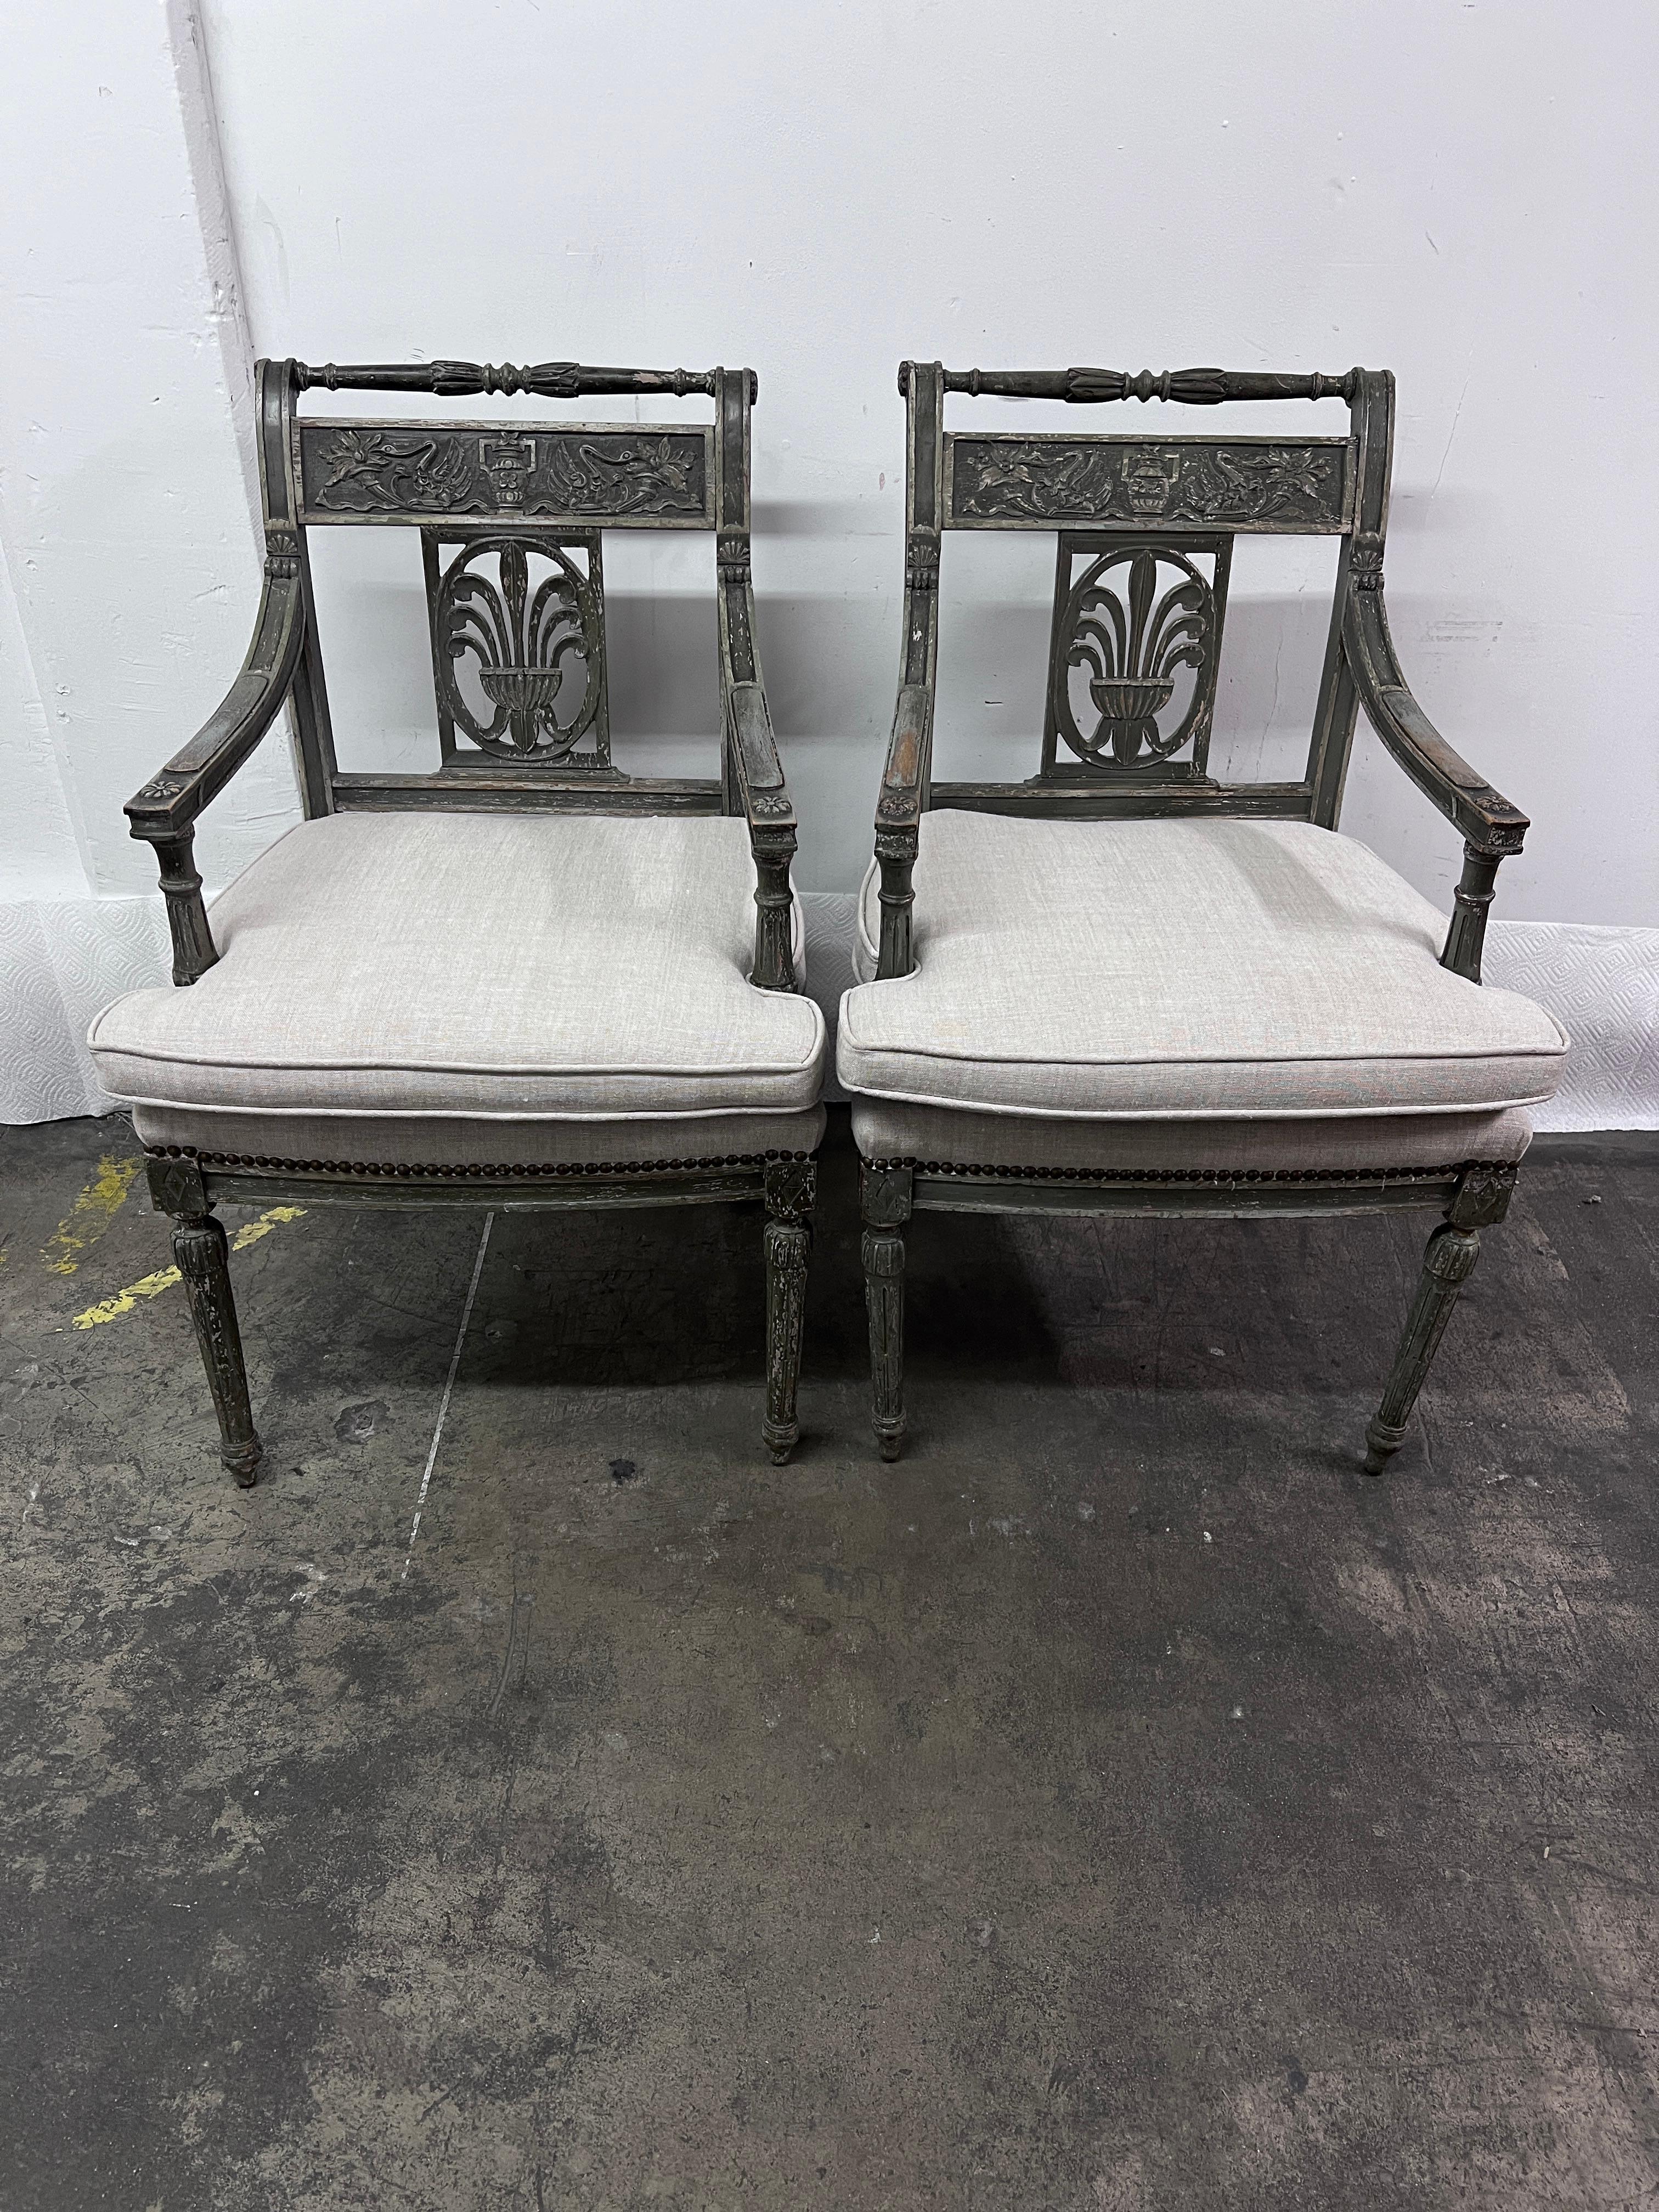 Ein schönes Pari aus dem späten 18. und frühen 19. Jahrhundert, schwedische Gustavianische Stühle.

Die schwedisch graue Patinierung ist perfekt und die Liebe zum Detail, die Schnitzerei und das Design repräsentieren die Epoche und das klassische